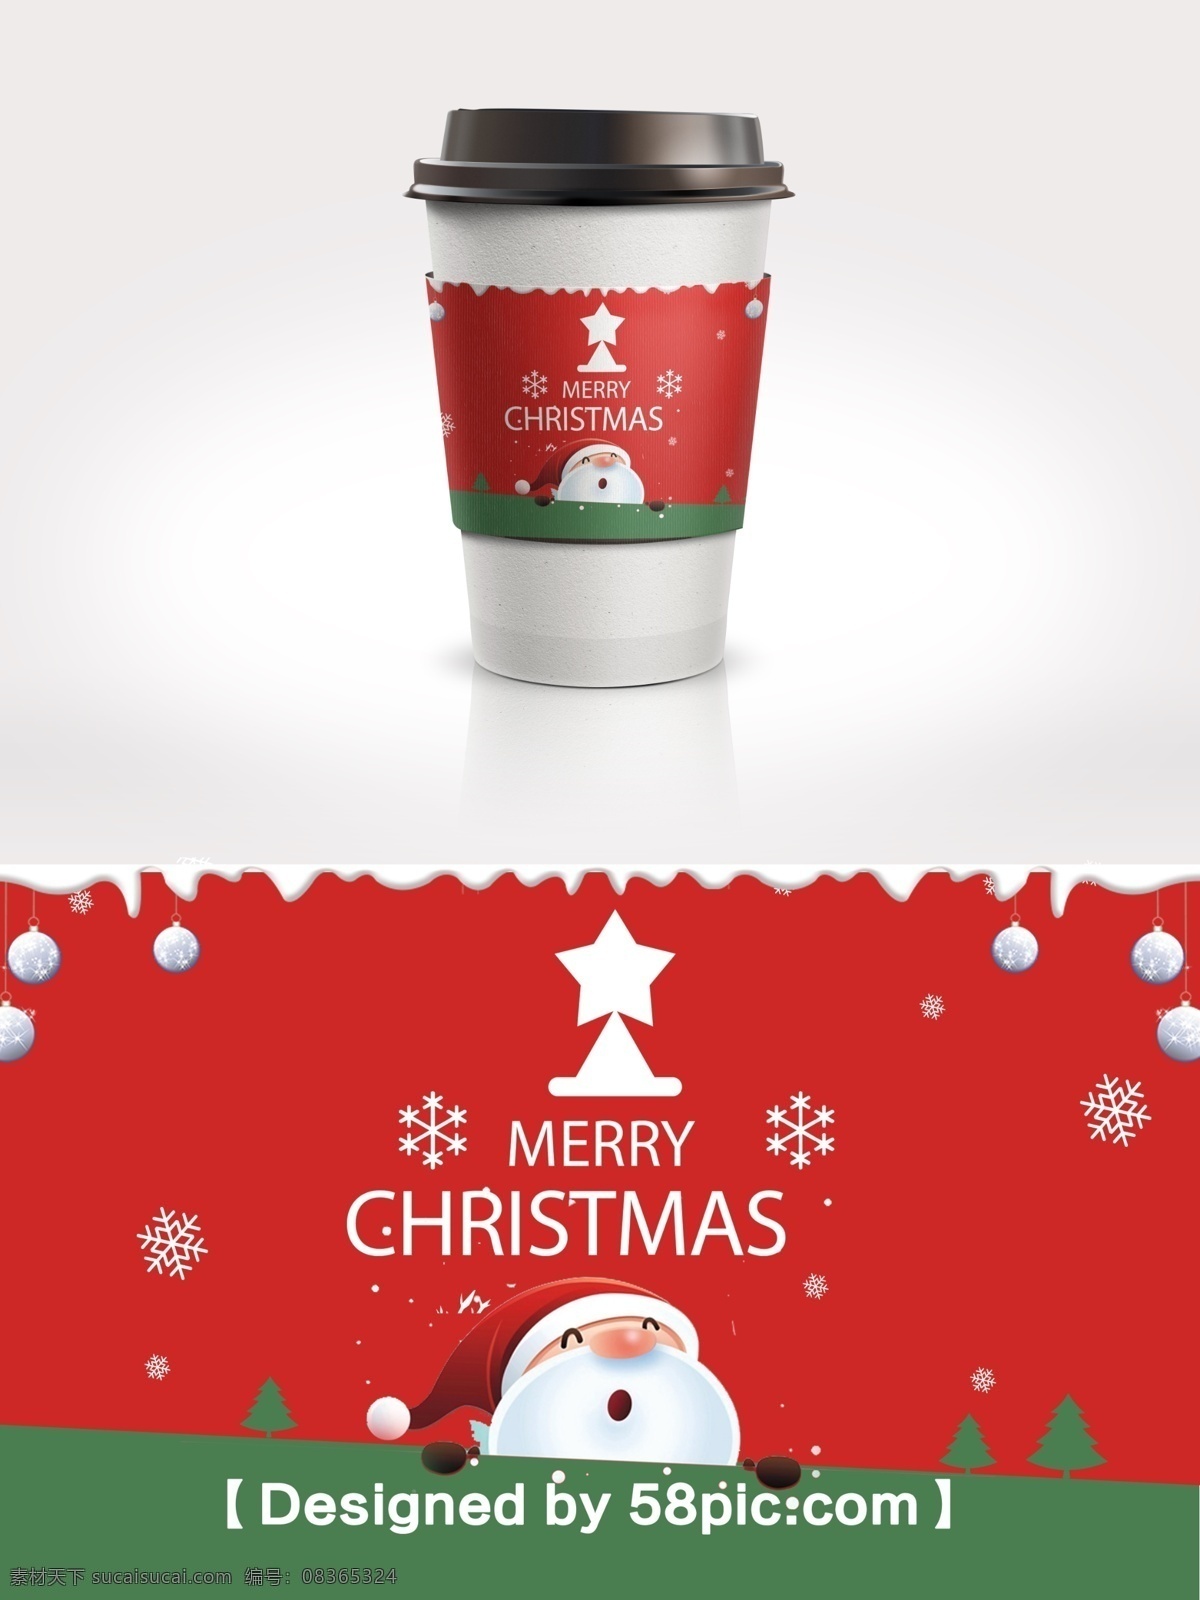 红 绿色 简约 大气 撞 色 圣诞节 雪花 咖啡杯 套 简约大气 psd素材 红绿撞色 圣诞节素材 圣诞老人 节日包装 咖啡杯套 广告设计模版 雪花素材